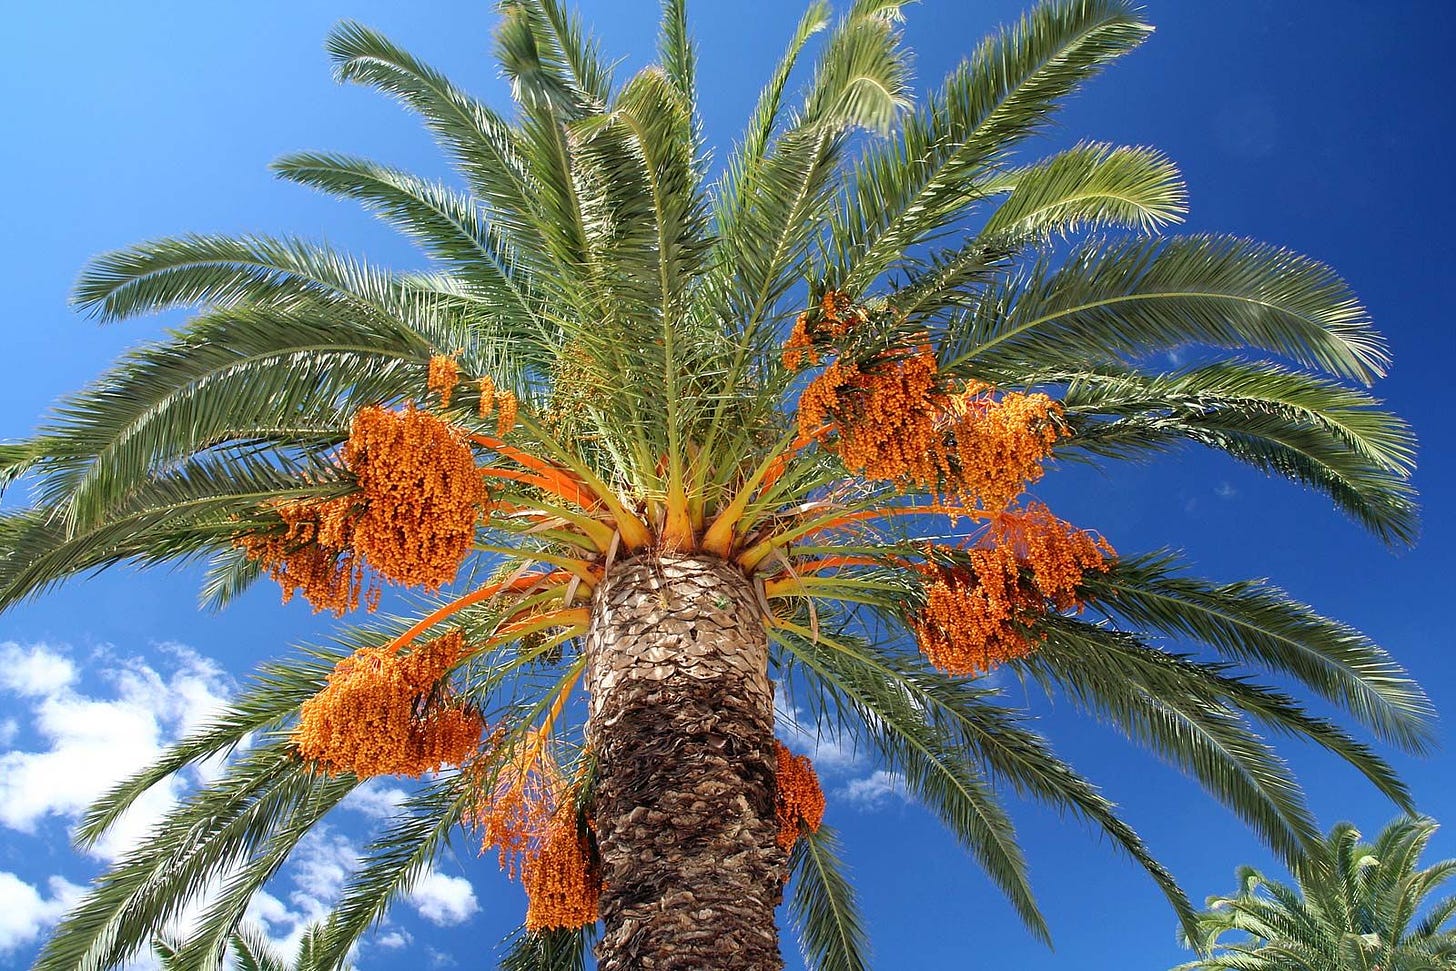 Date palm | Description, Uses, & Cultivation | Britannica